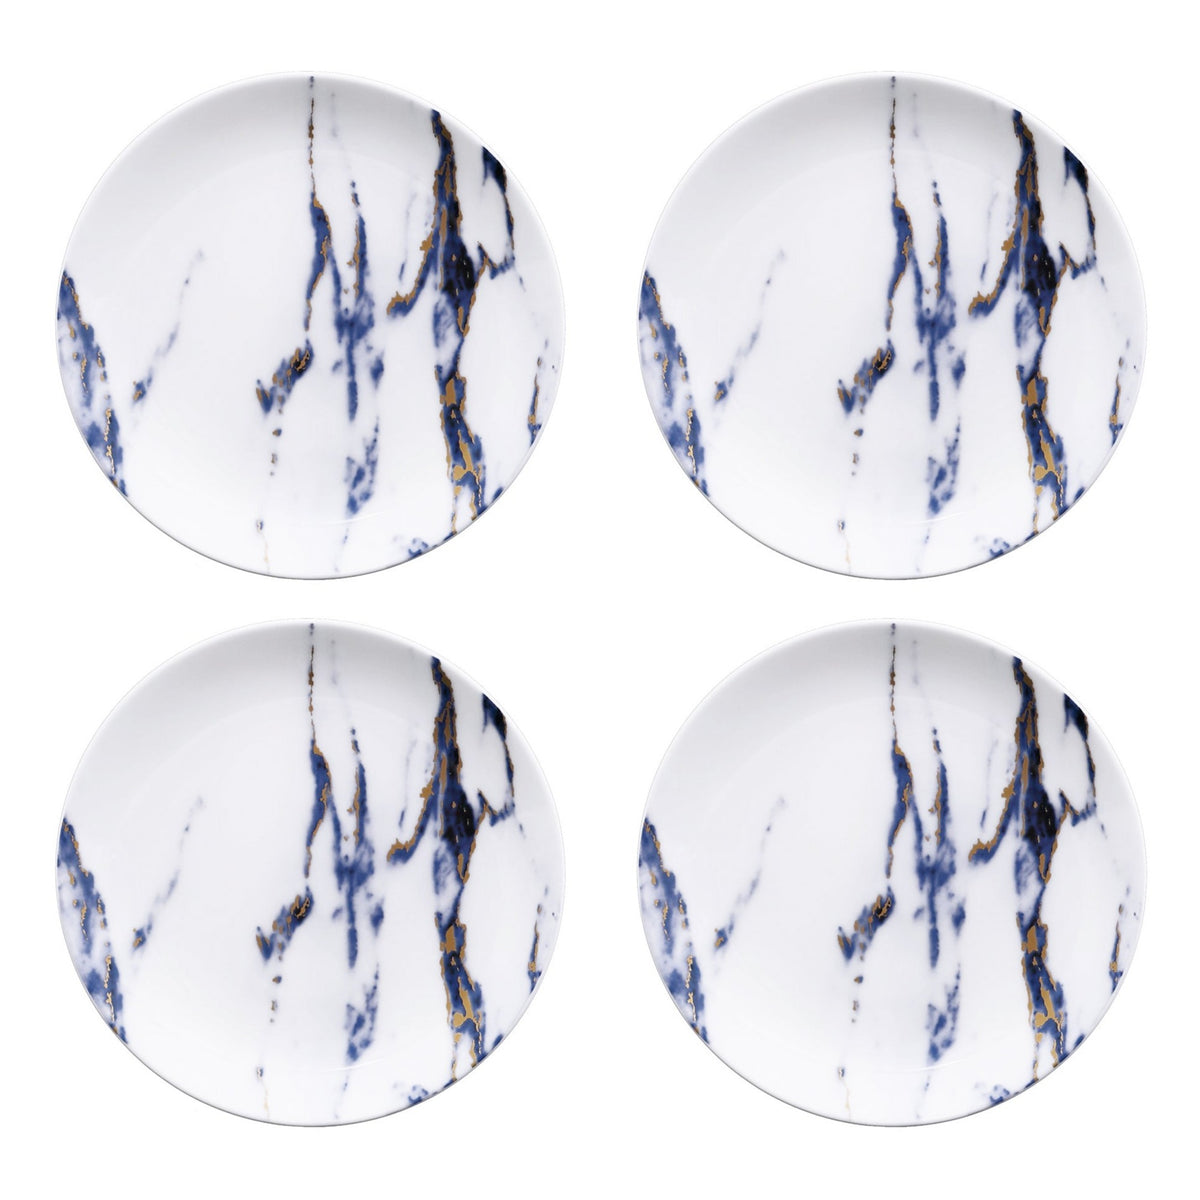 Prouna Marble Azure Set of 4, Canapé Plates White Background Photo